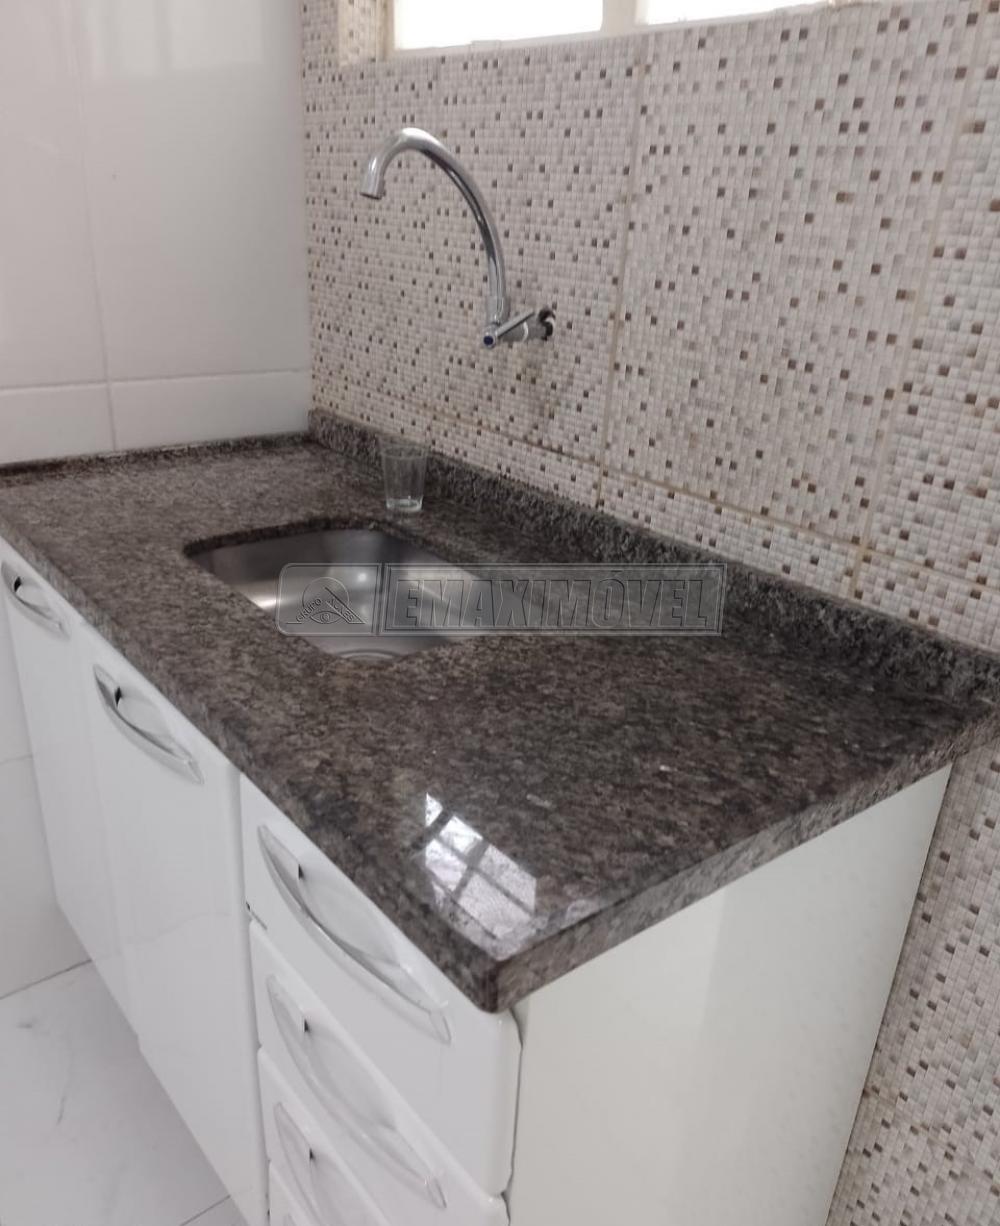 Comprar Apartamento / Padrão em Sorocaba R$ 170.000,00 - Foto 3